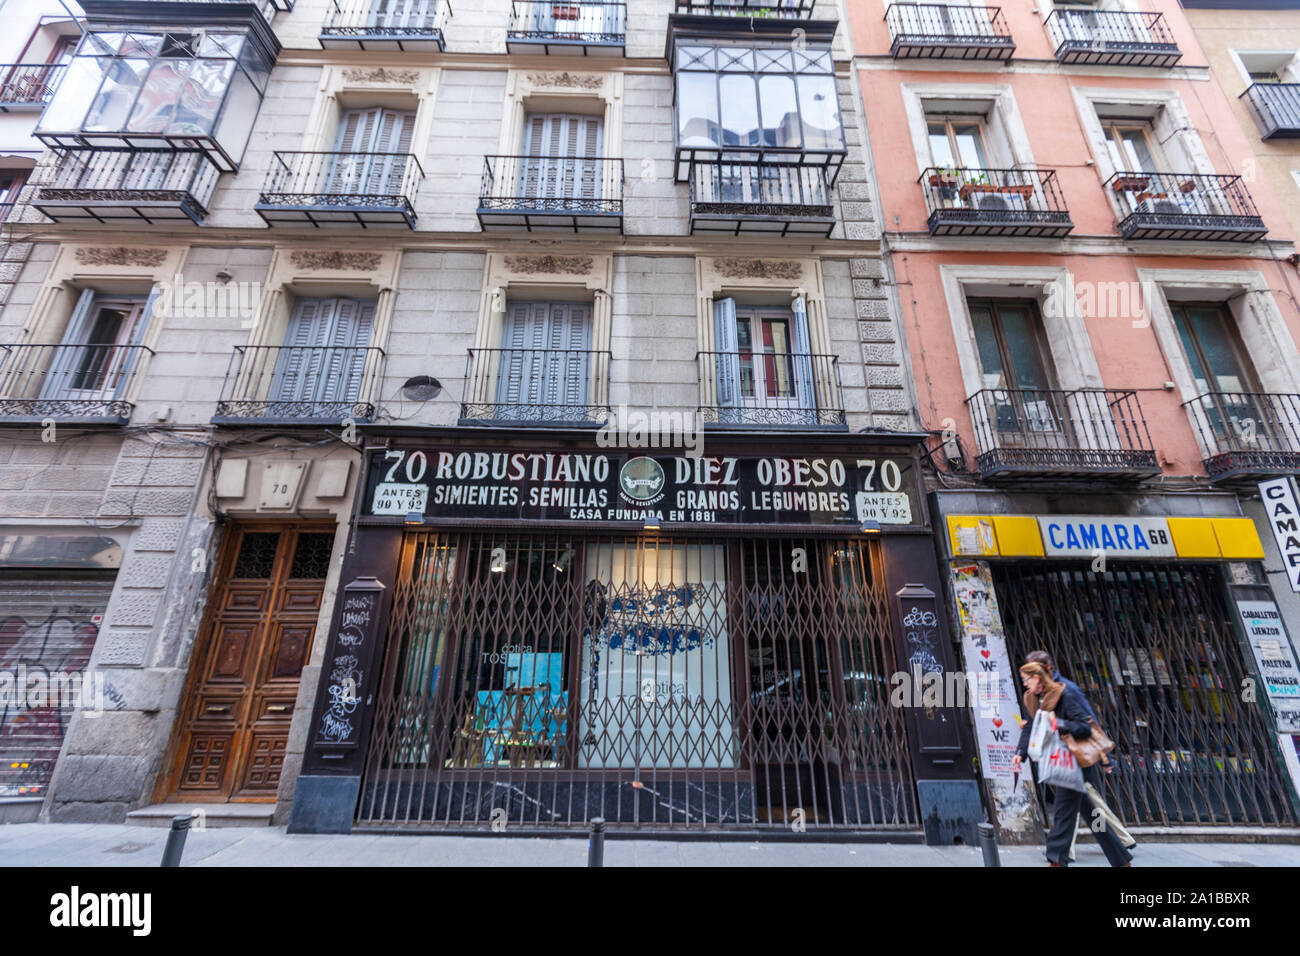 Robustiano Diez Obeso vieilles semences et shop en zone piétonne calle Fuencarral, Madrid, Espagne Banque D'Images